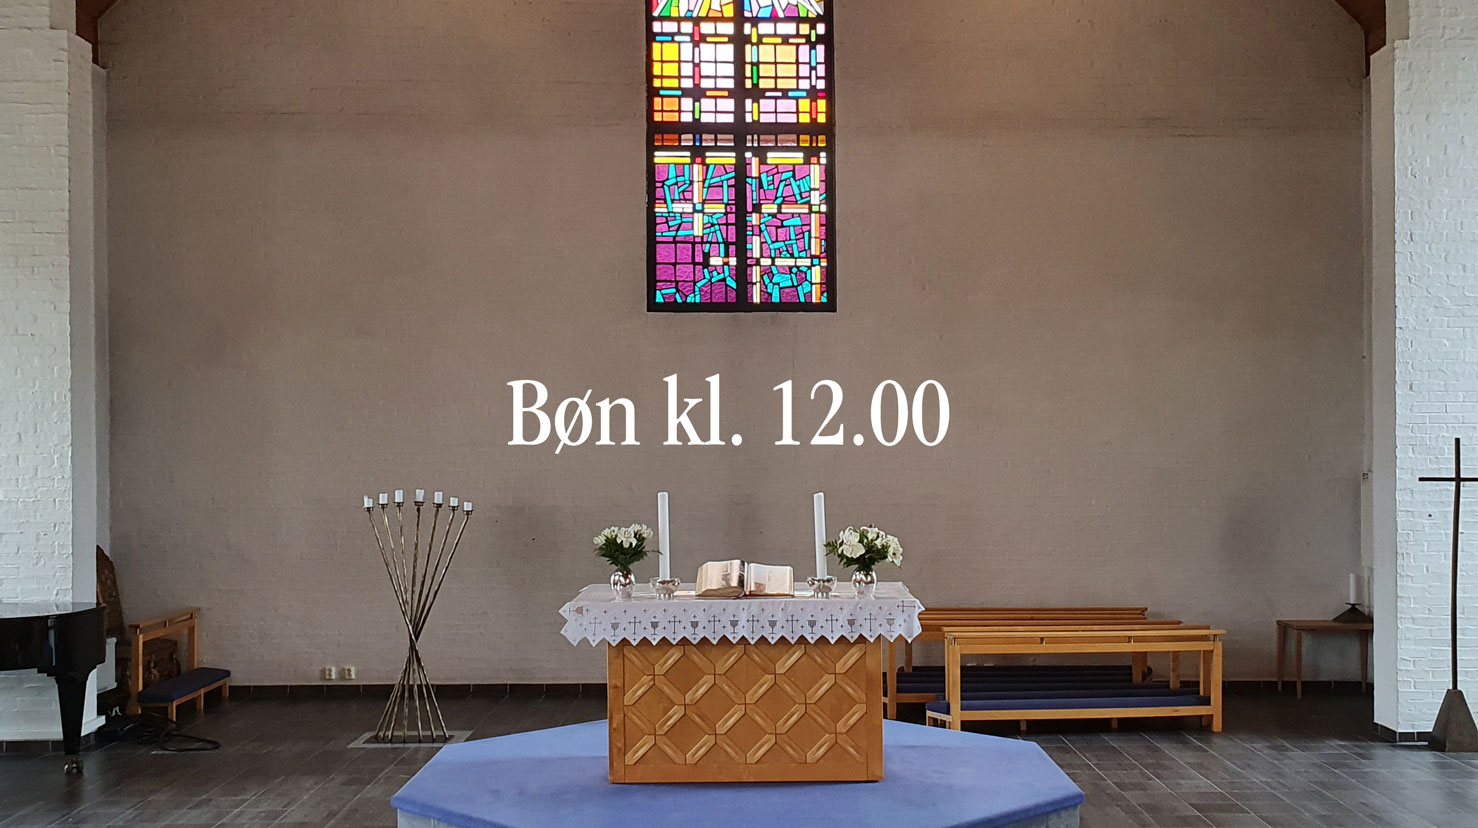 Dagens bøn kl. 12 er i veke 19 frå Skjold kirke med tilsette i Fana prosti. Foto: Torfinn Wang